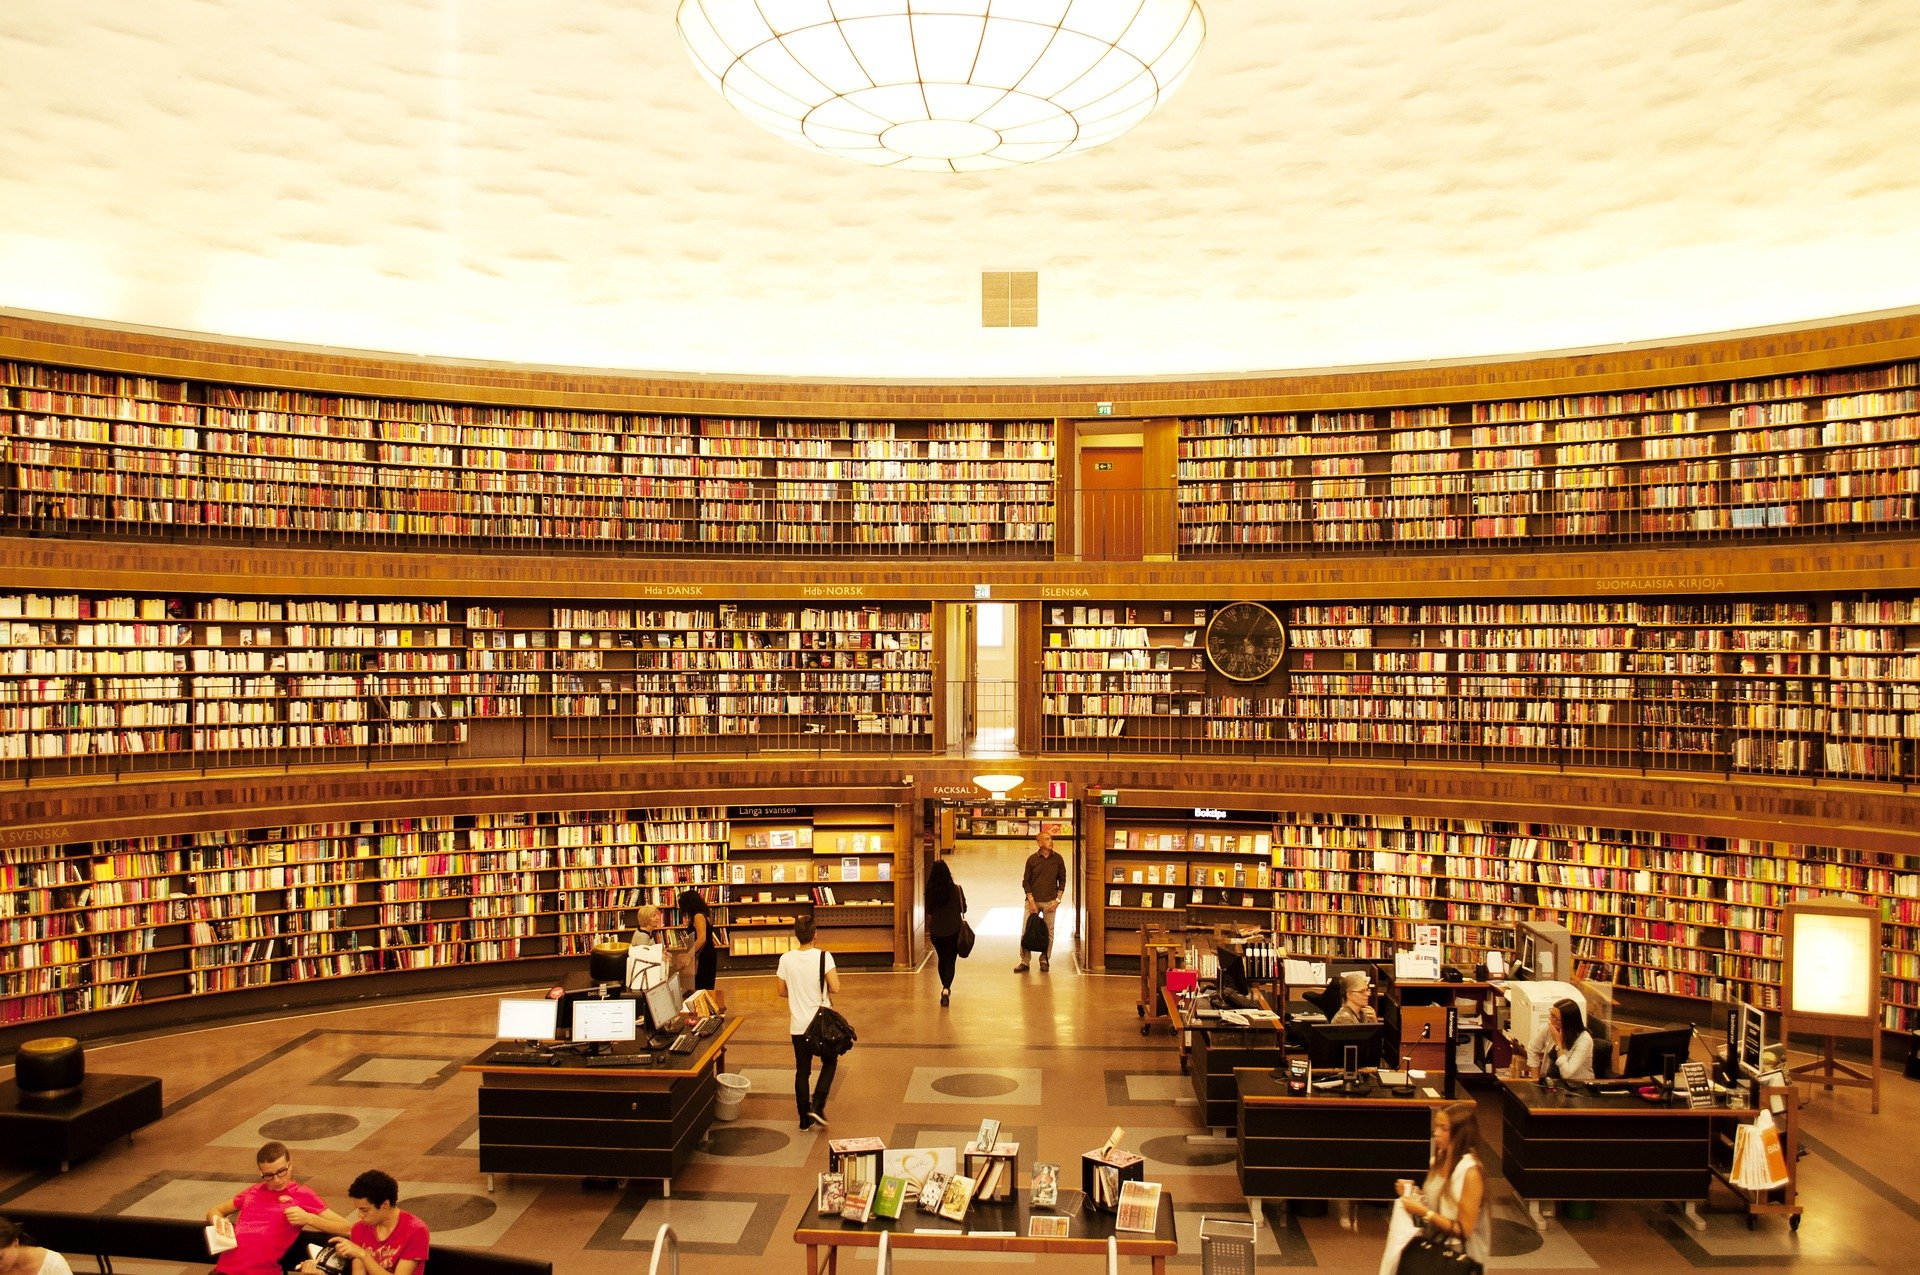 Das Innere einer Studentenbibliothek. | Quelle: Pixabay